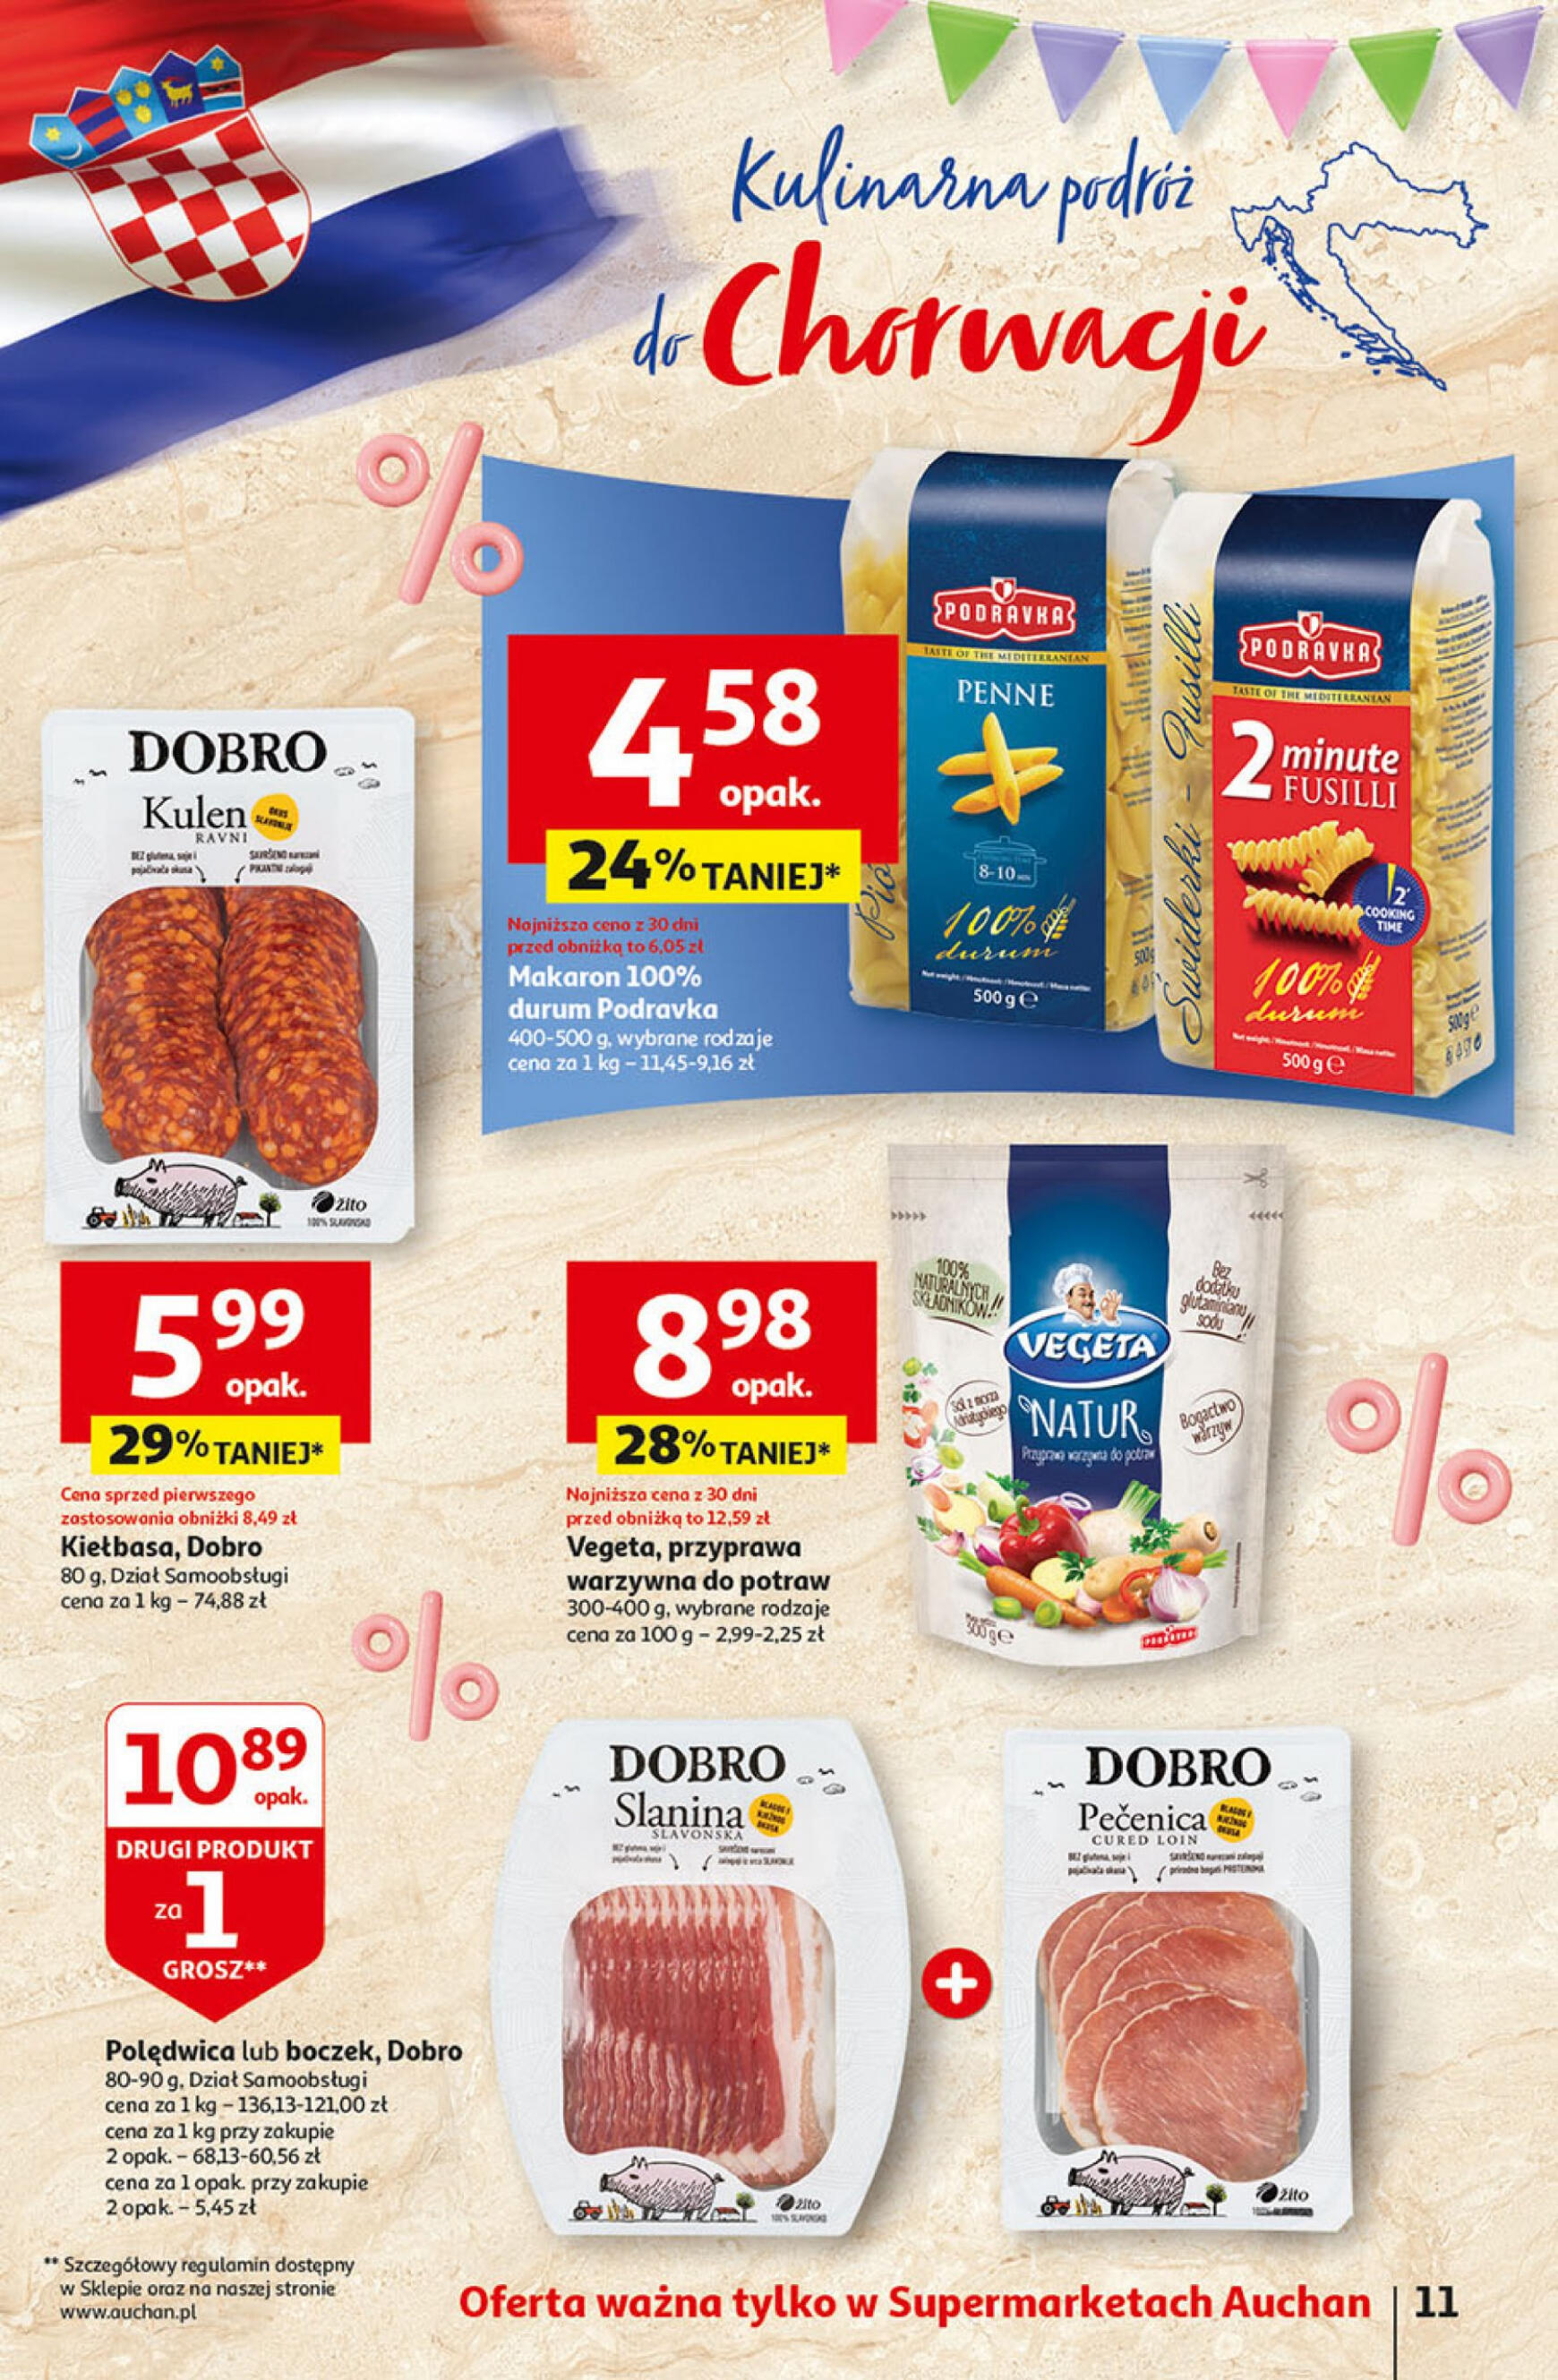 auchan - Supermarket Auchan - Gazetka Jeszcze taniej na urodziny gazetka aktualna ważna od 25.04. - 30.04. - page: 11